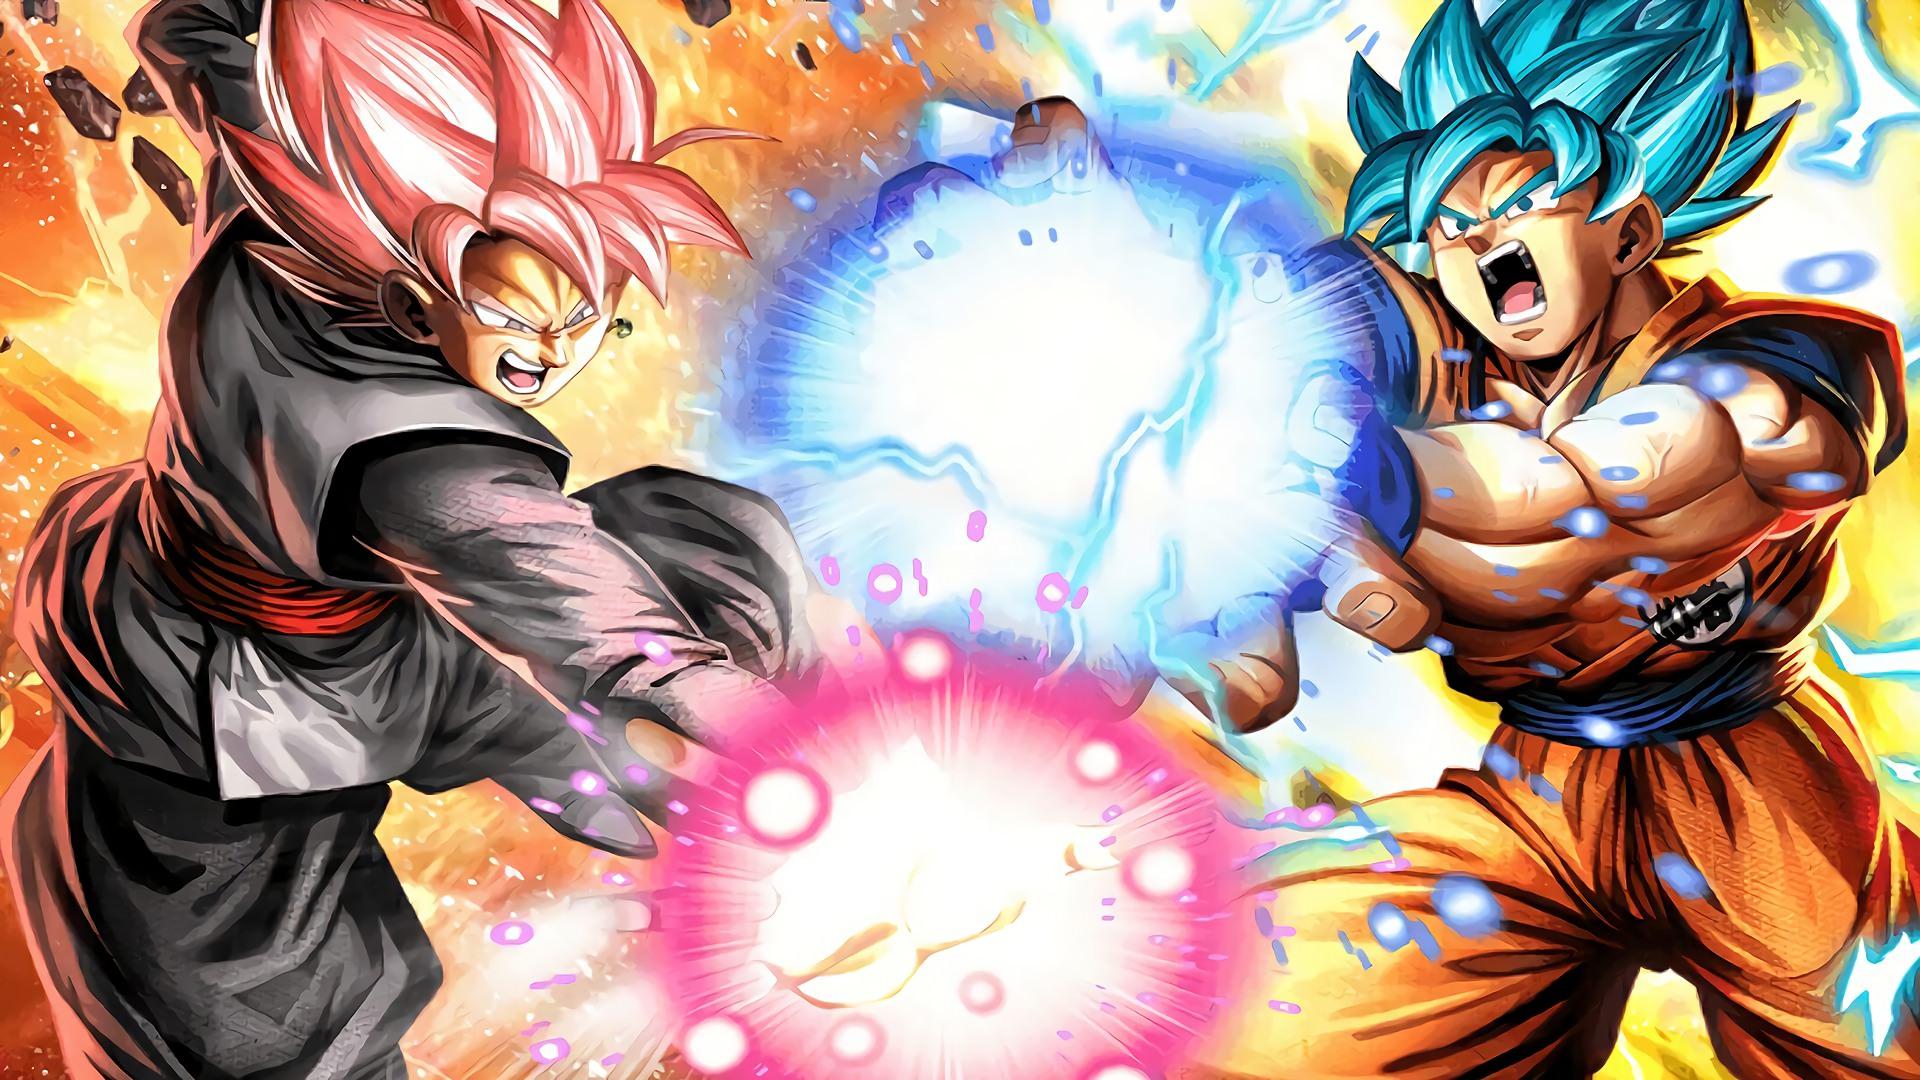 Black Goku vs Goku Wallpaper Free Black Goku vs Goku